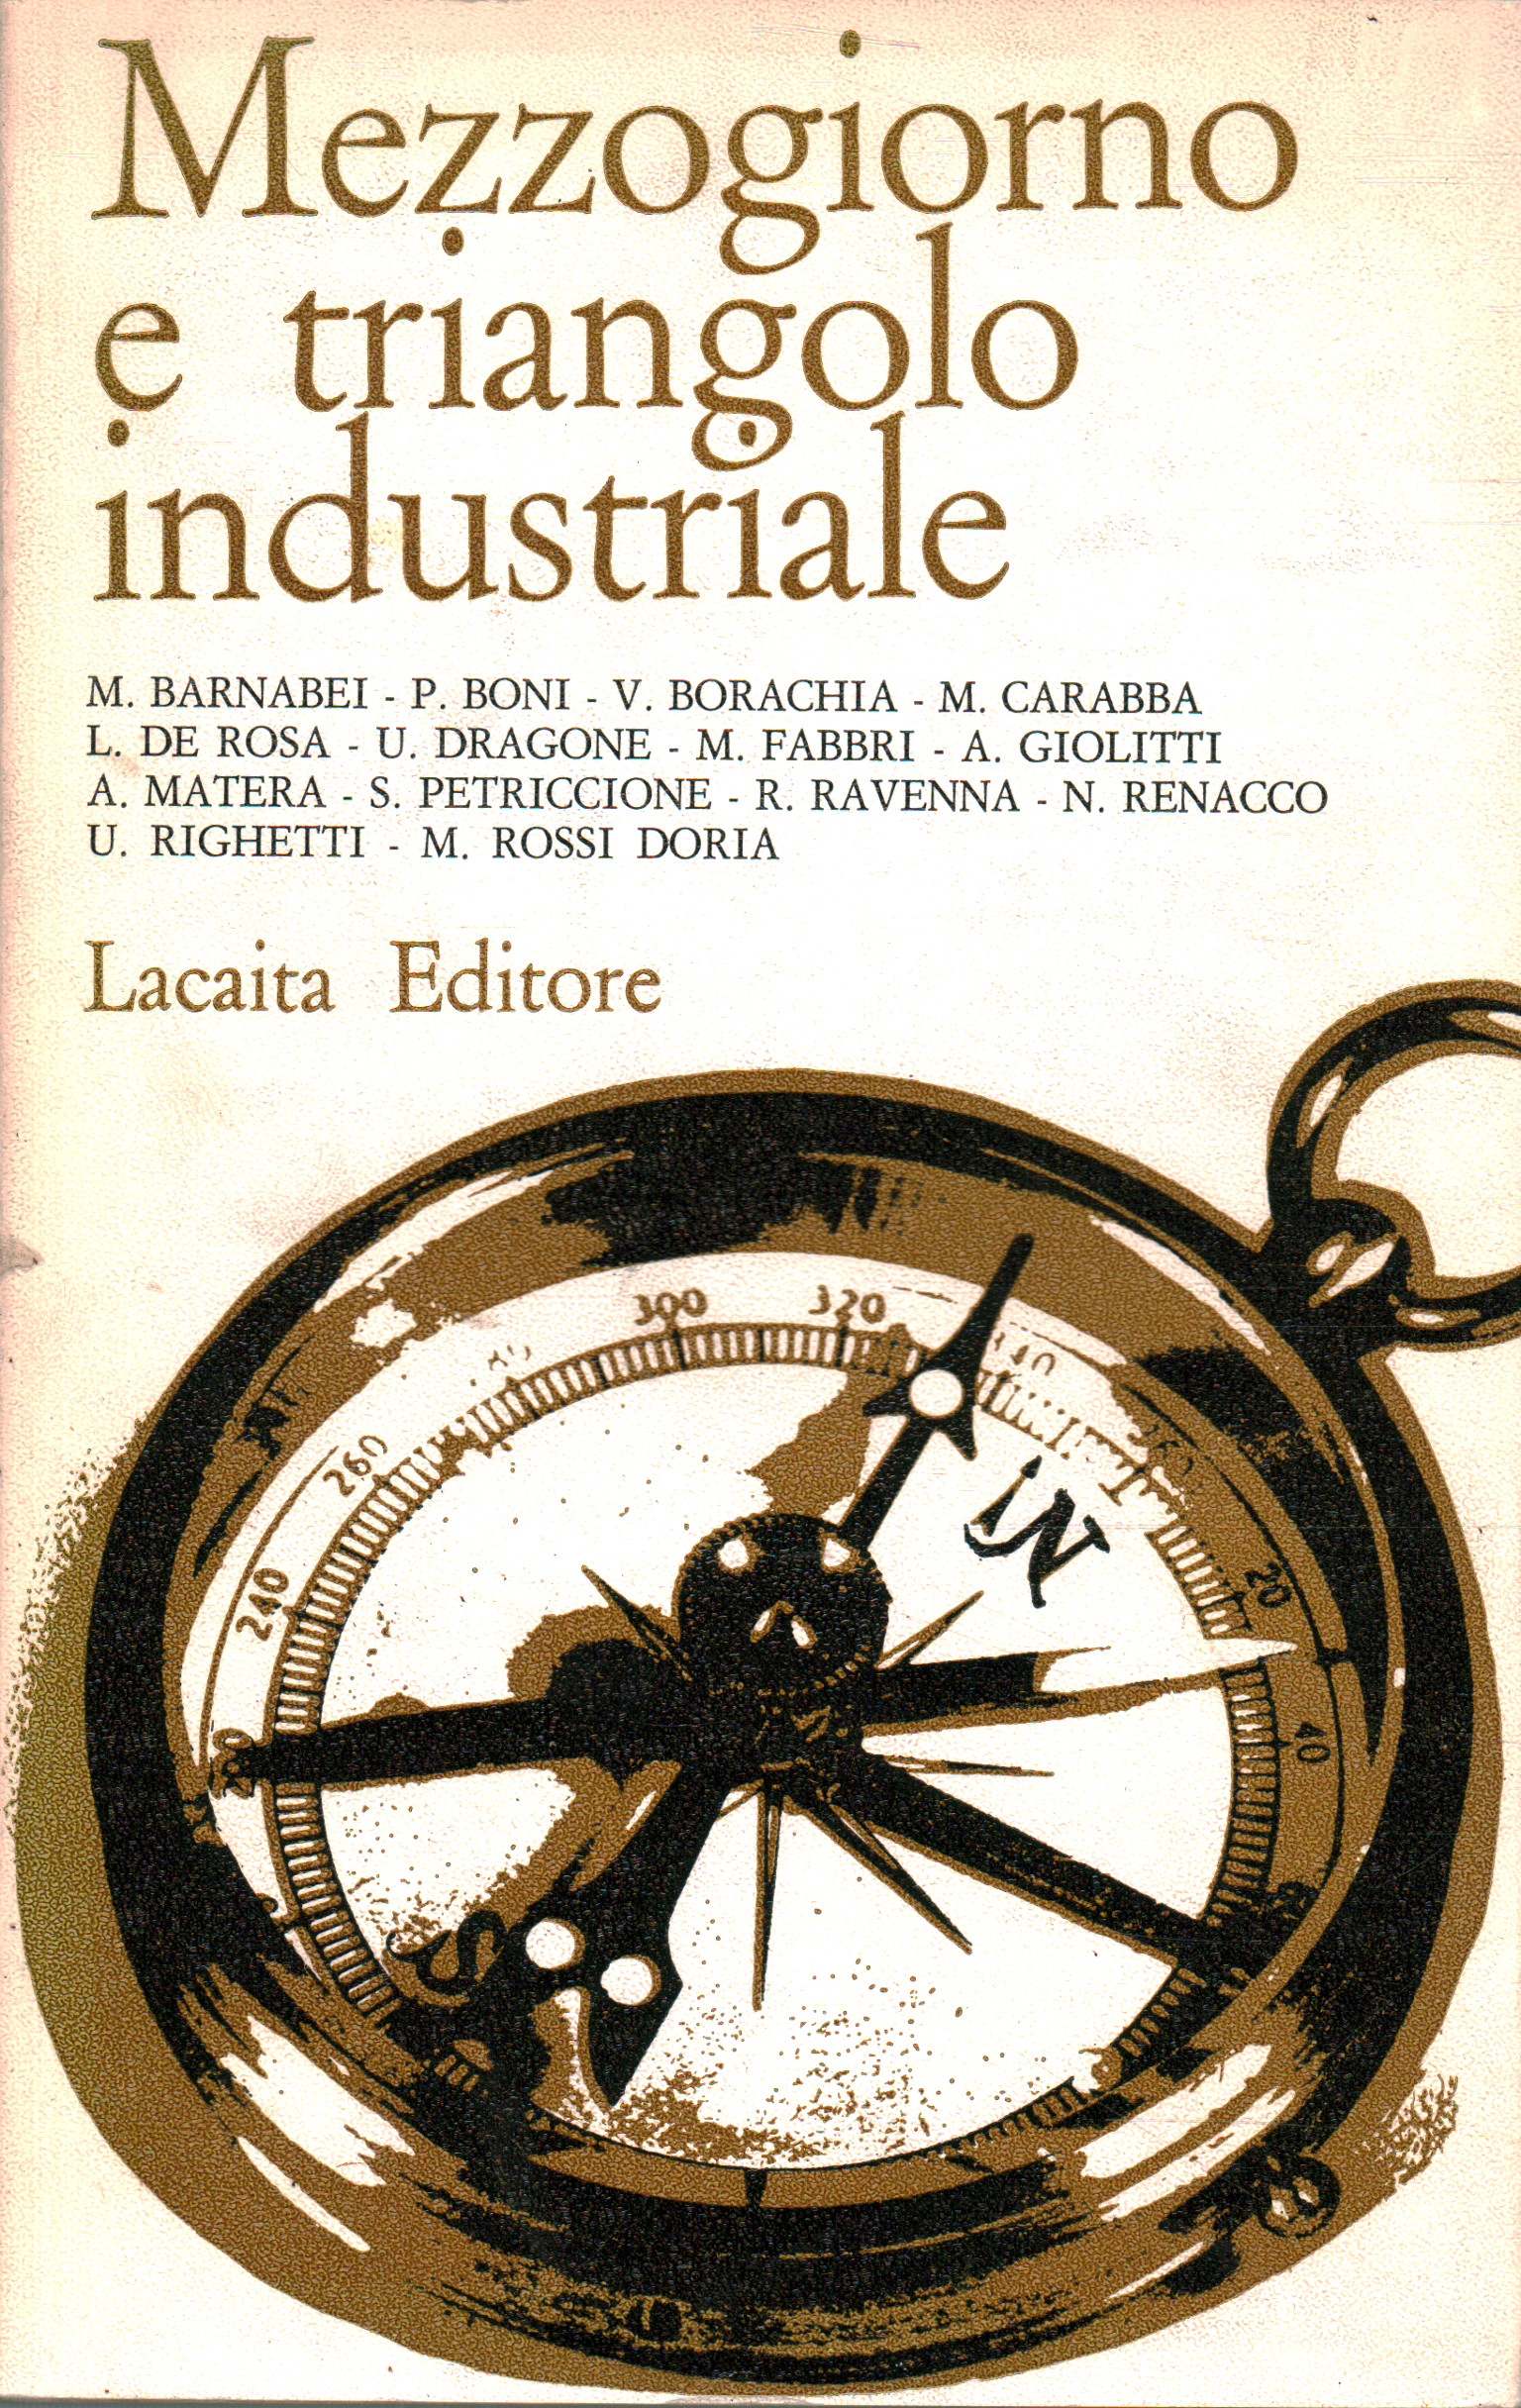 Mezzogiorno and industrial triangle, AA.VV